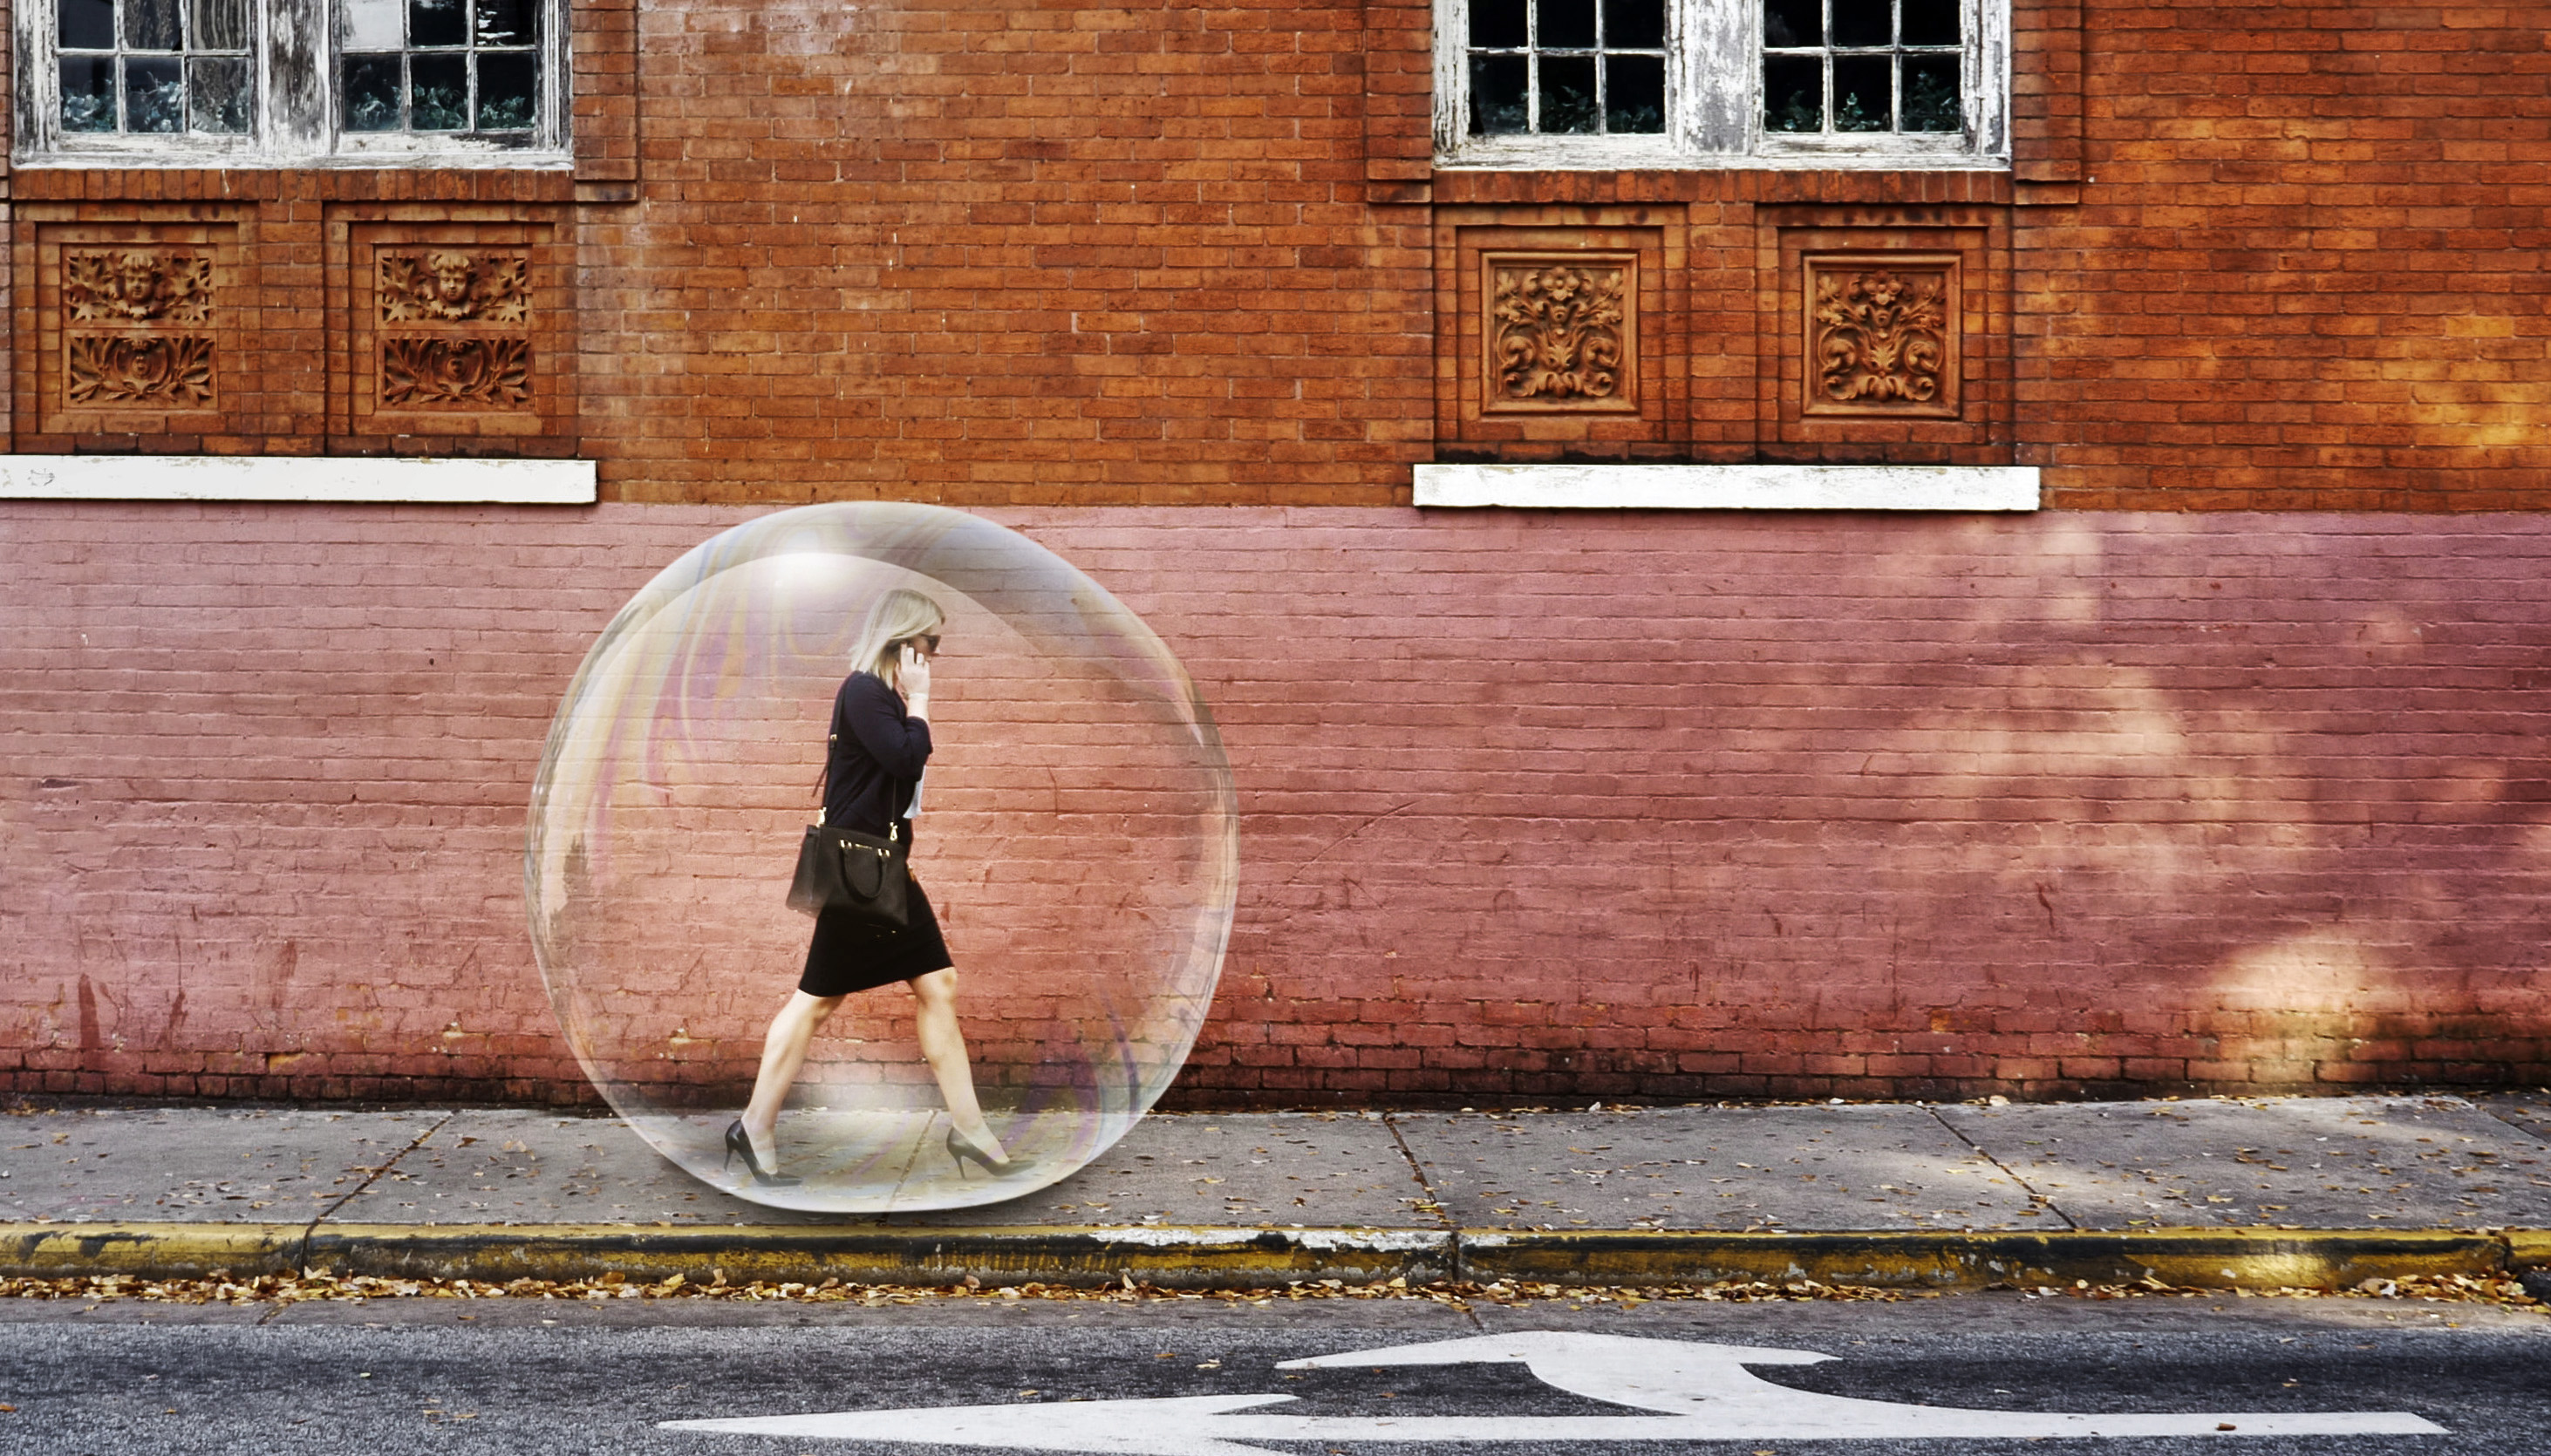 Outside our bubble